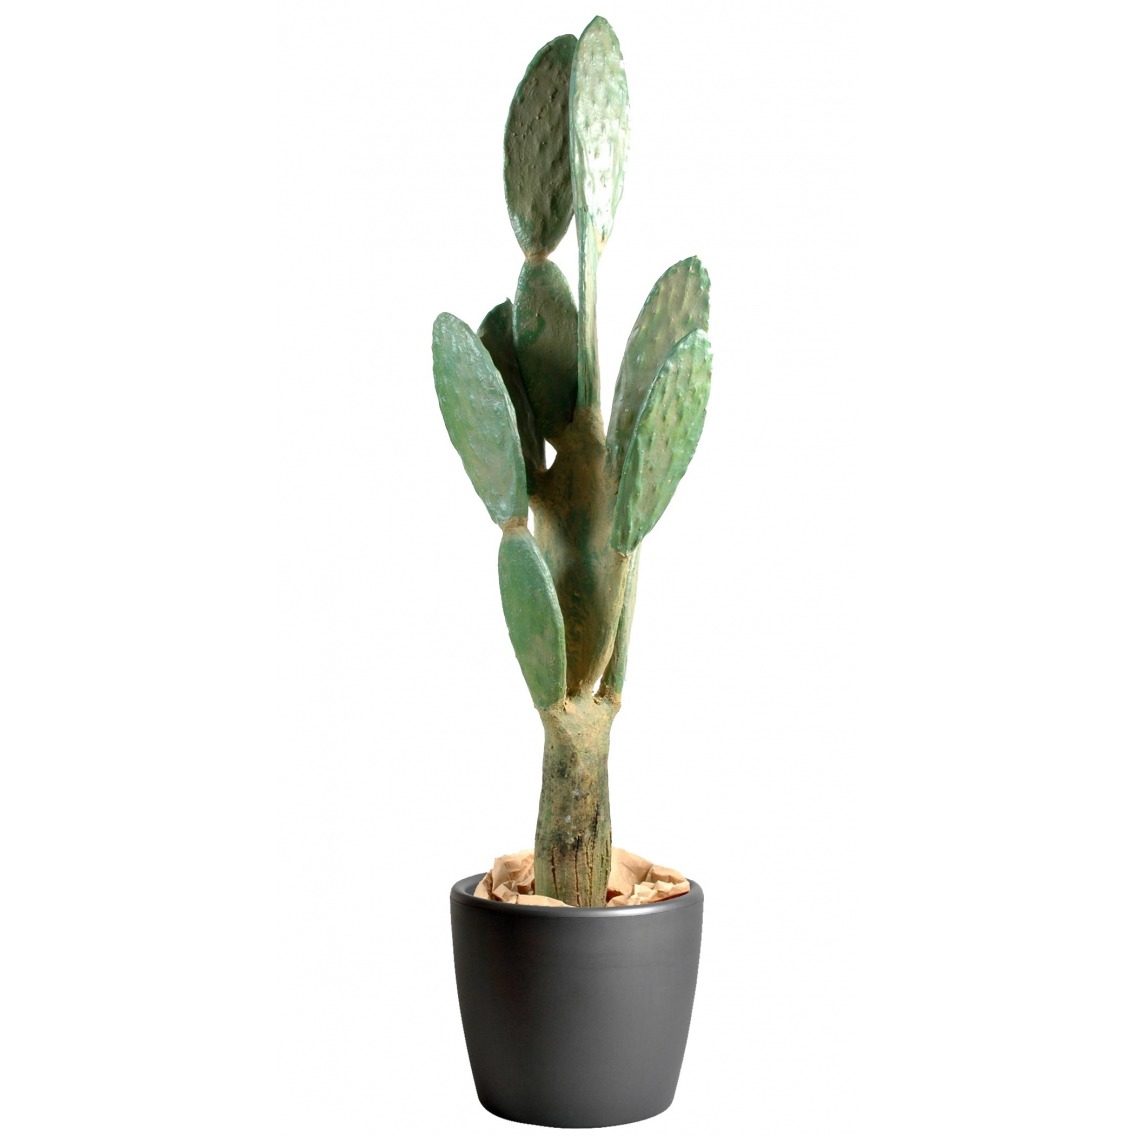 Cactus artificiel géant